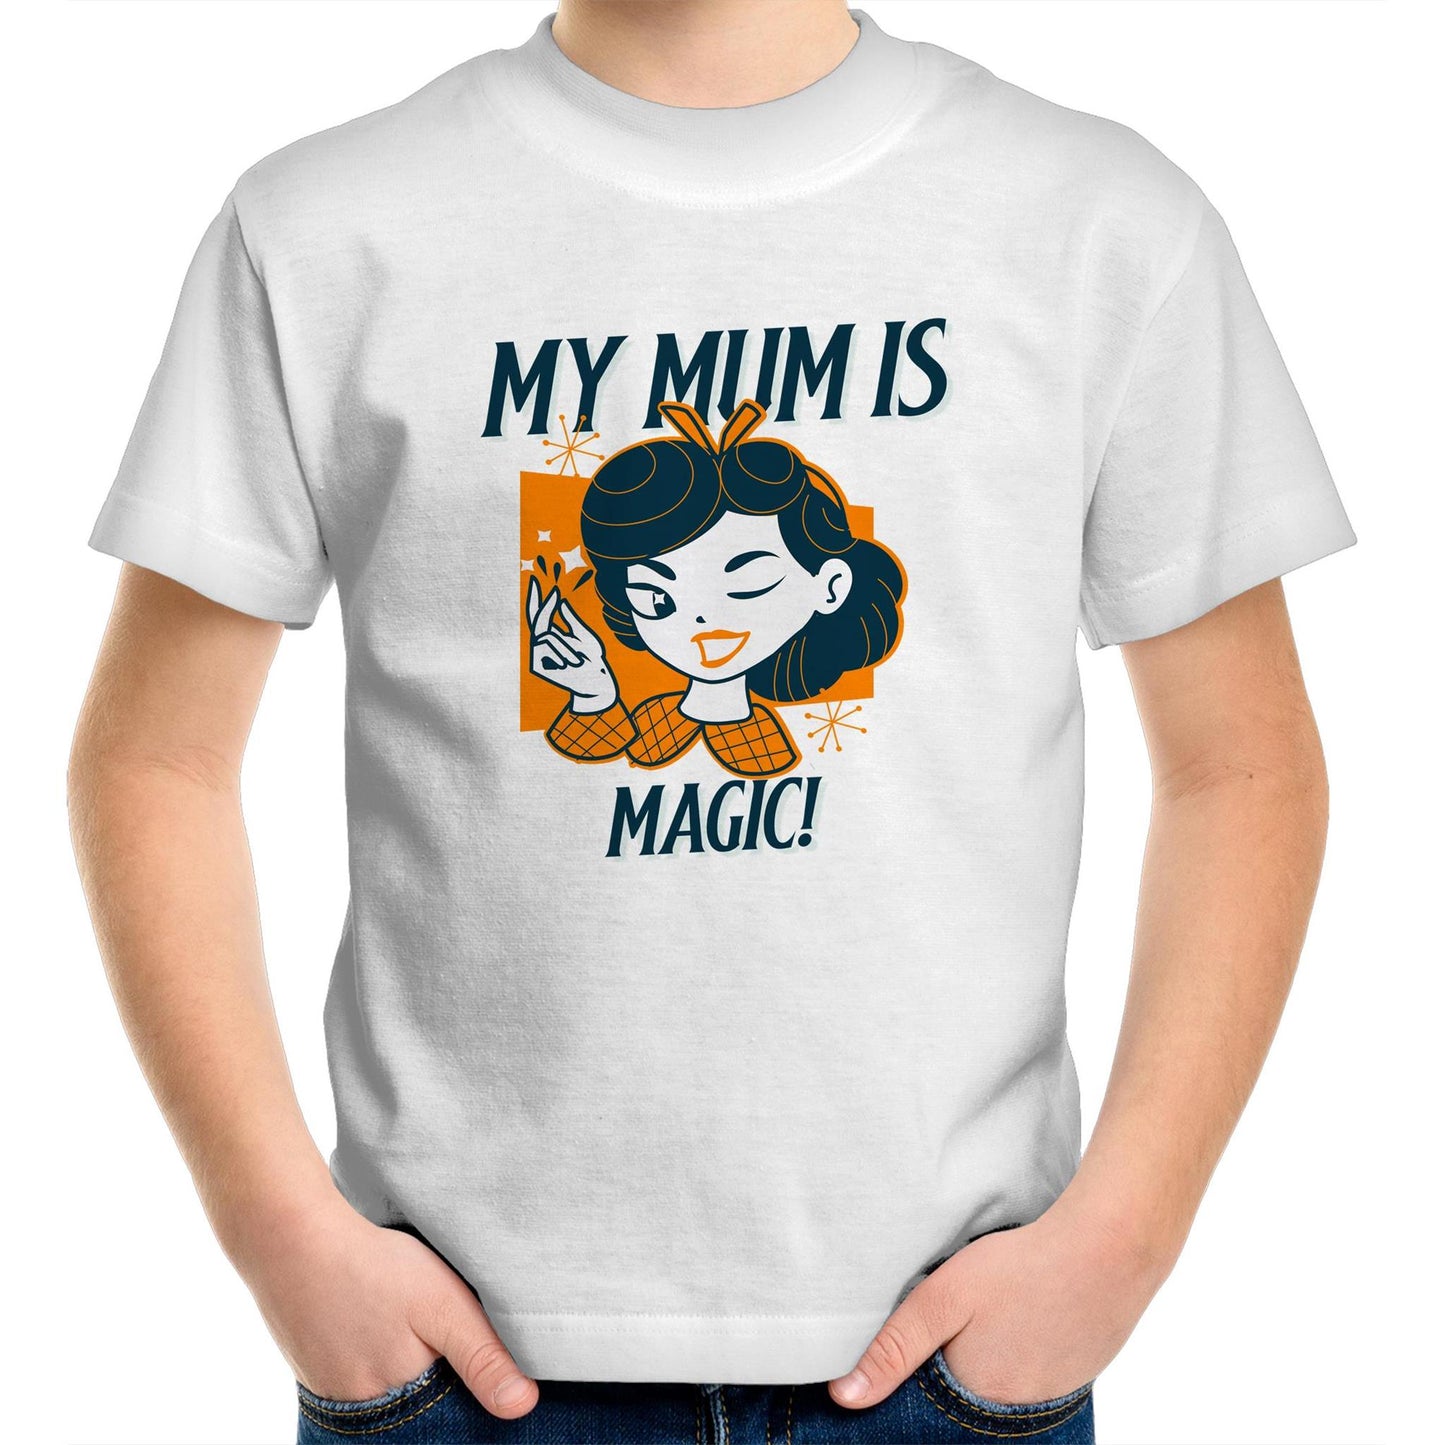 My Mum Is Magic - Kids Youth Crew T-Shirt White Kids Youth T-shirt Mum Retro